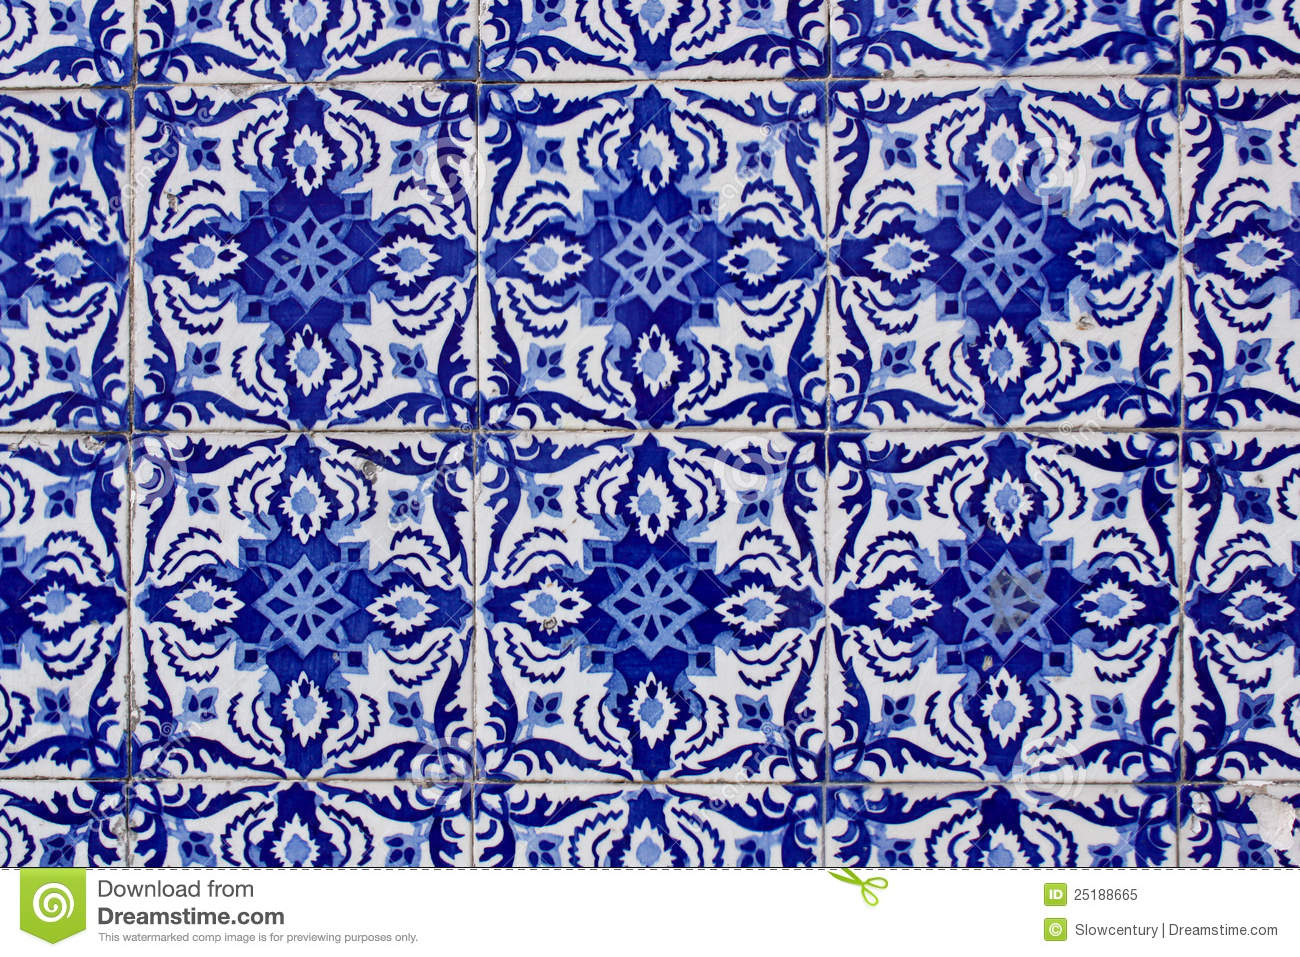 vieilles-tuiles-portugaises-traditionnelles-d-azulejo-25188665.jpg